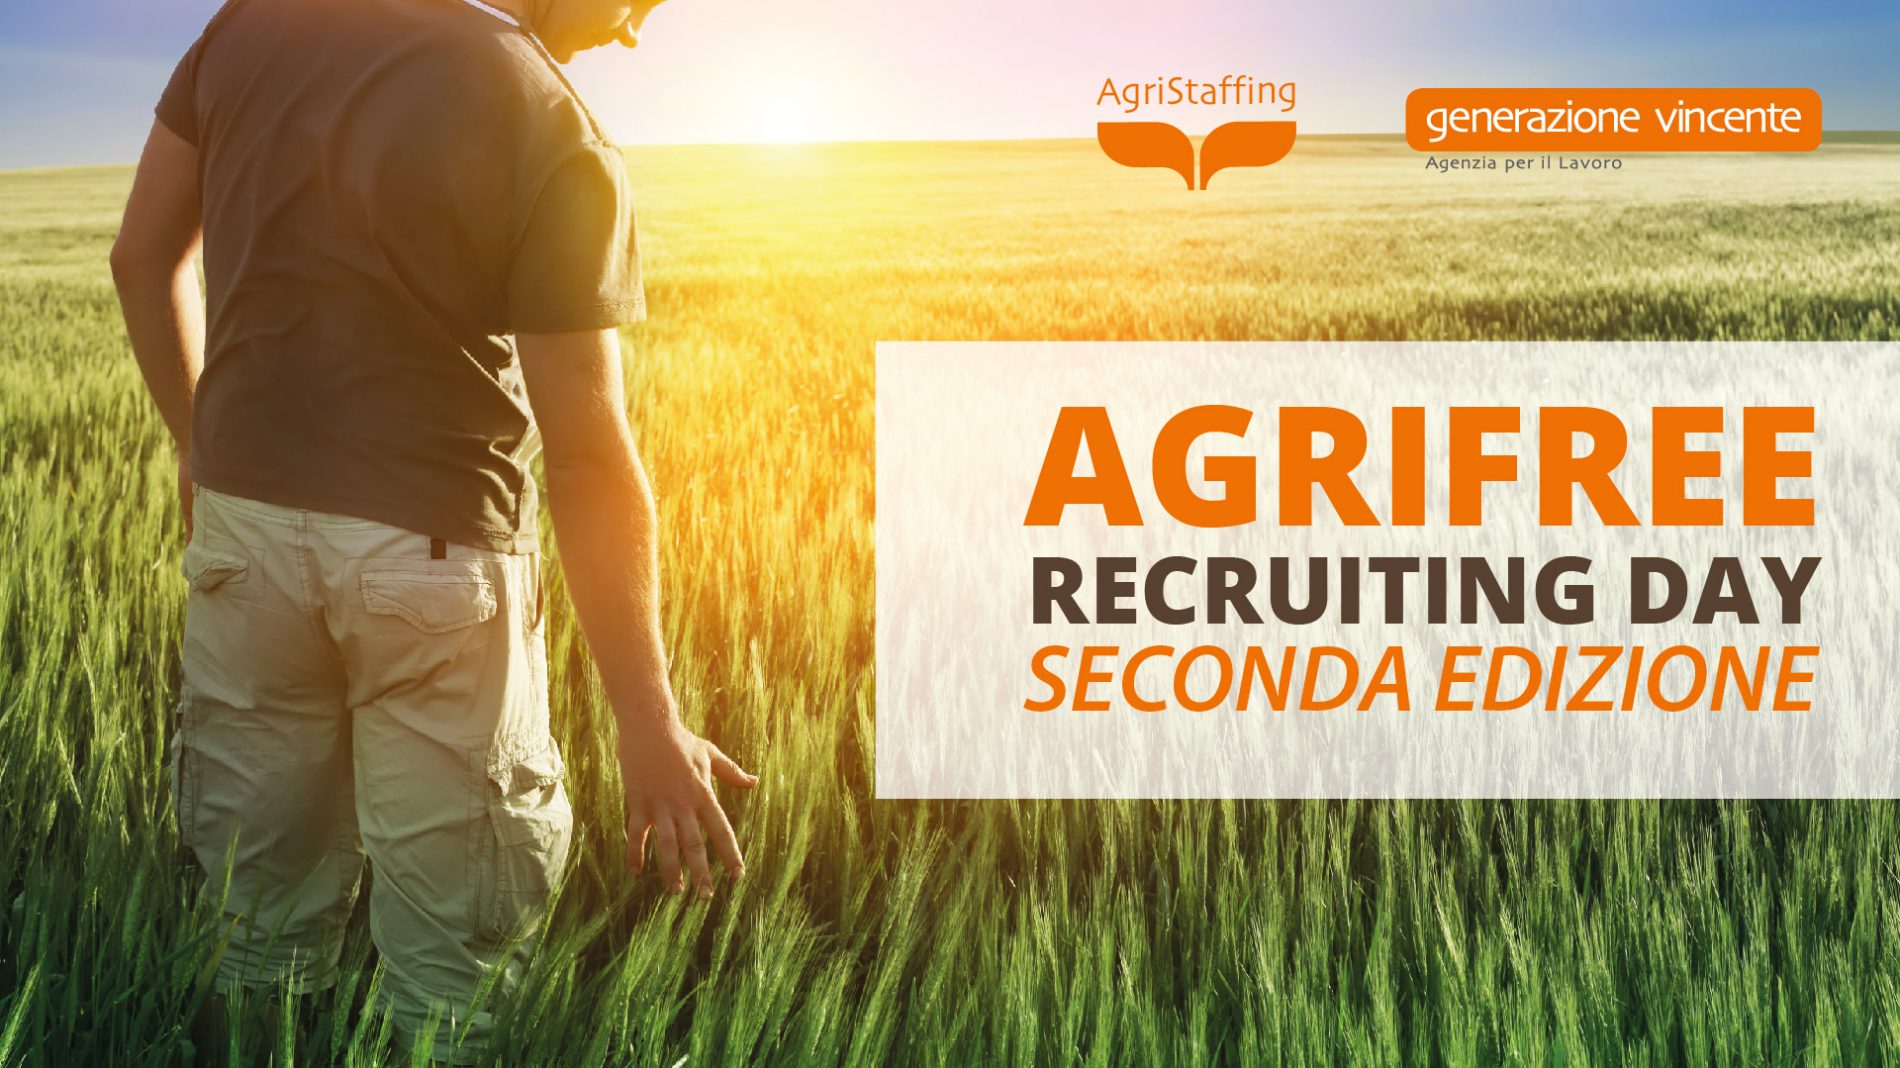 Agrifree Recruiting Day: opportunità di formazione e lavoro nel settore agricolo 2° Edizione [28 Aprile 2017 – Bitonto, Bari]